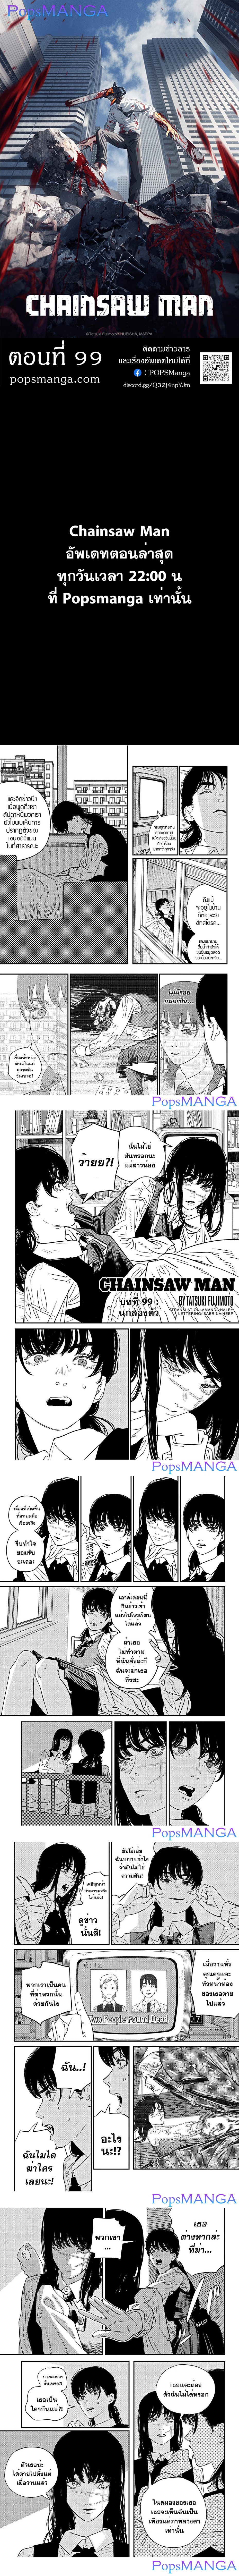 Chainsaw Man 99 (1)